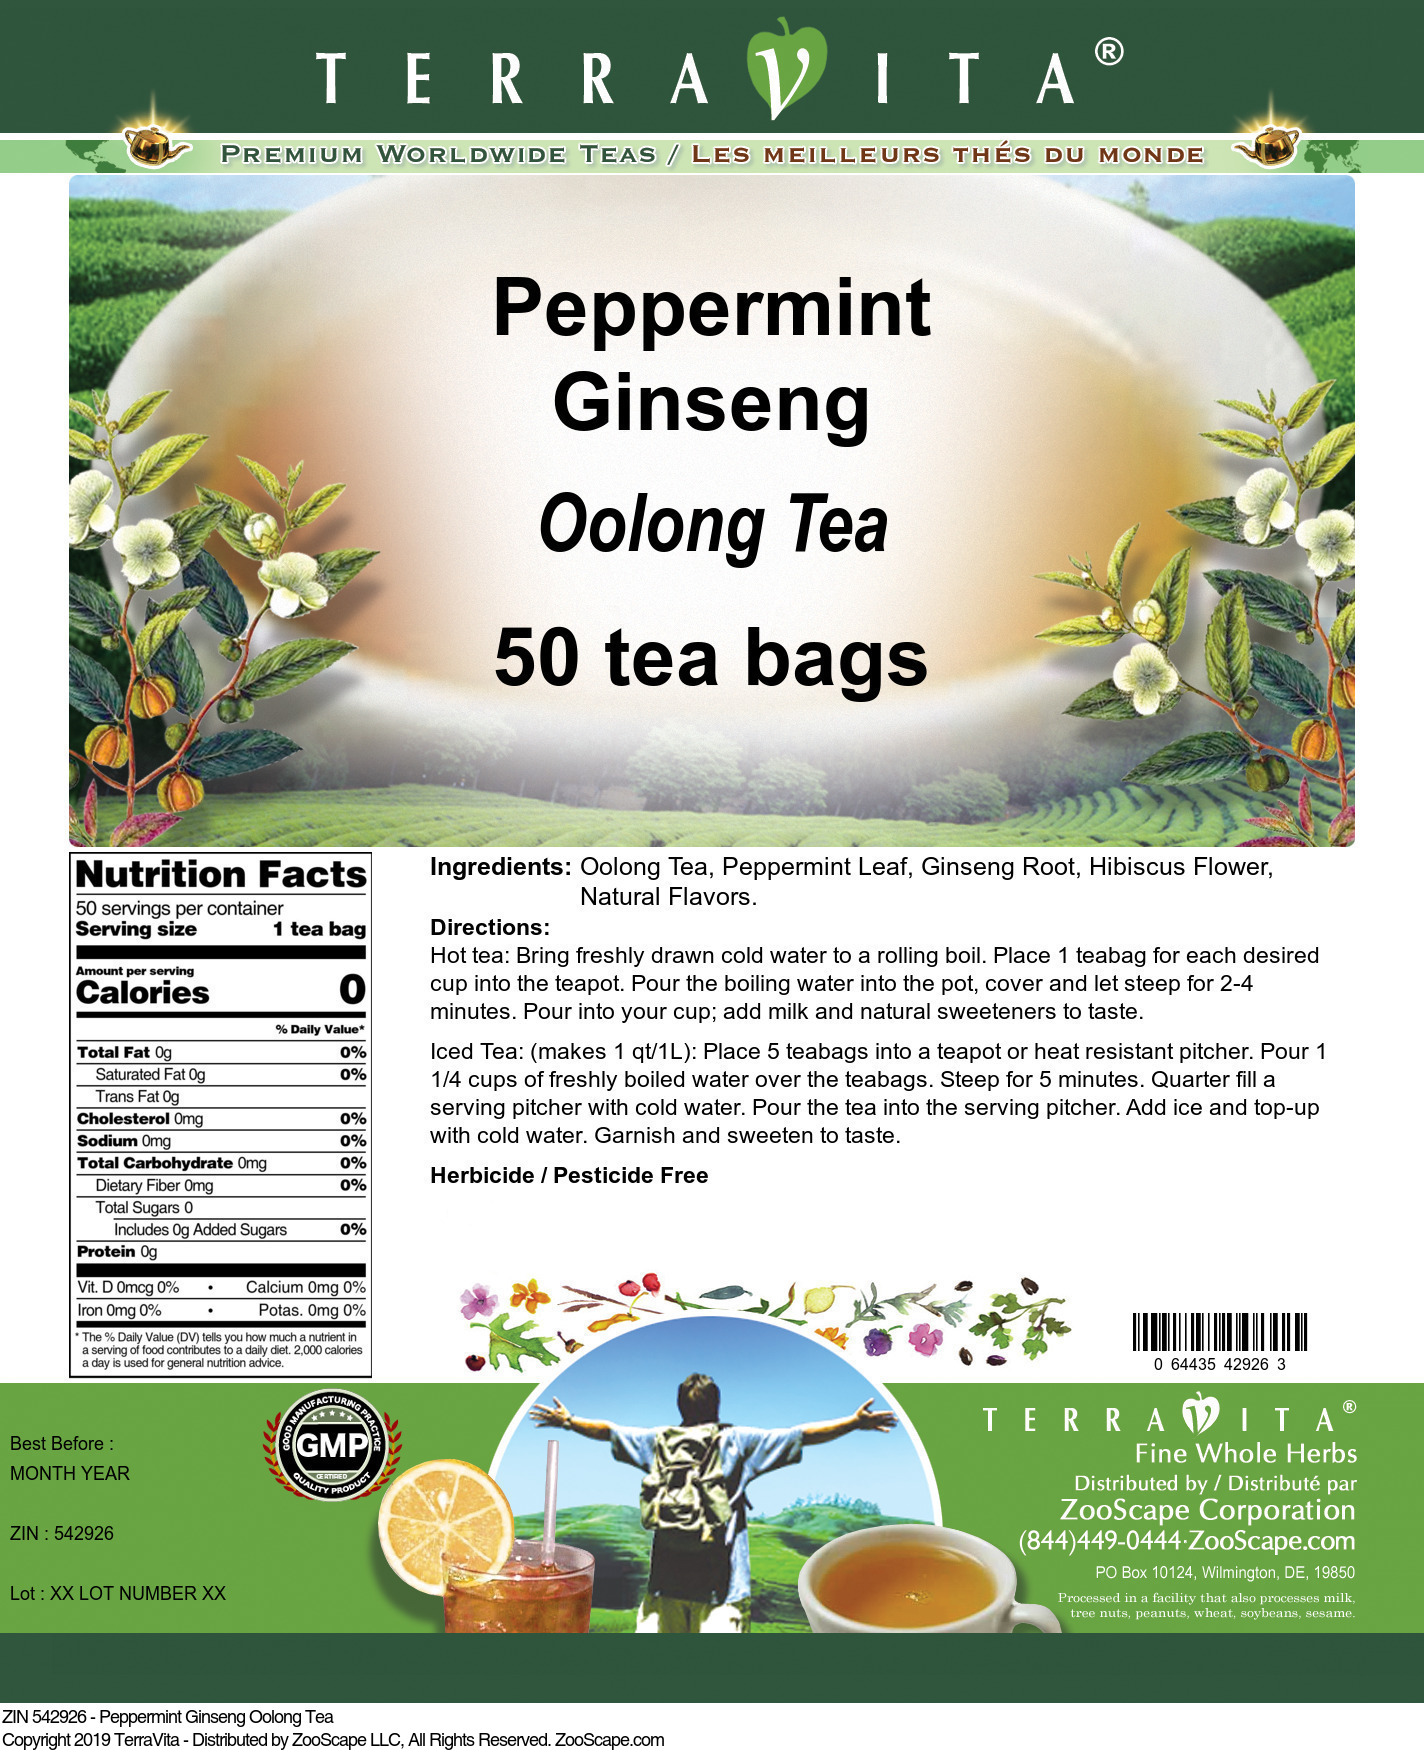 Peppermint Ginseng Oolong Tea - Label